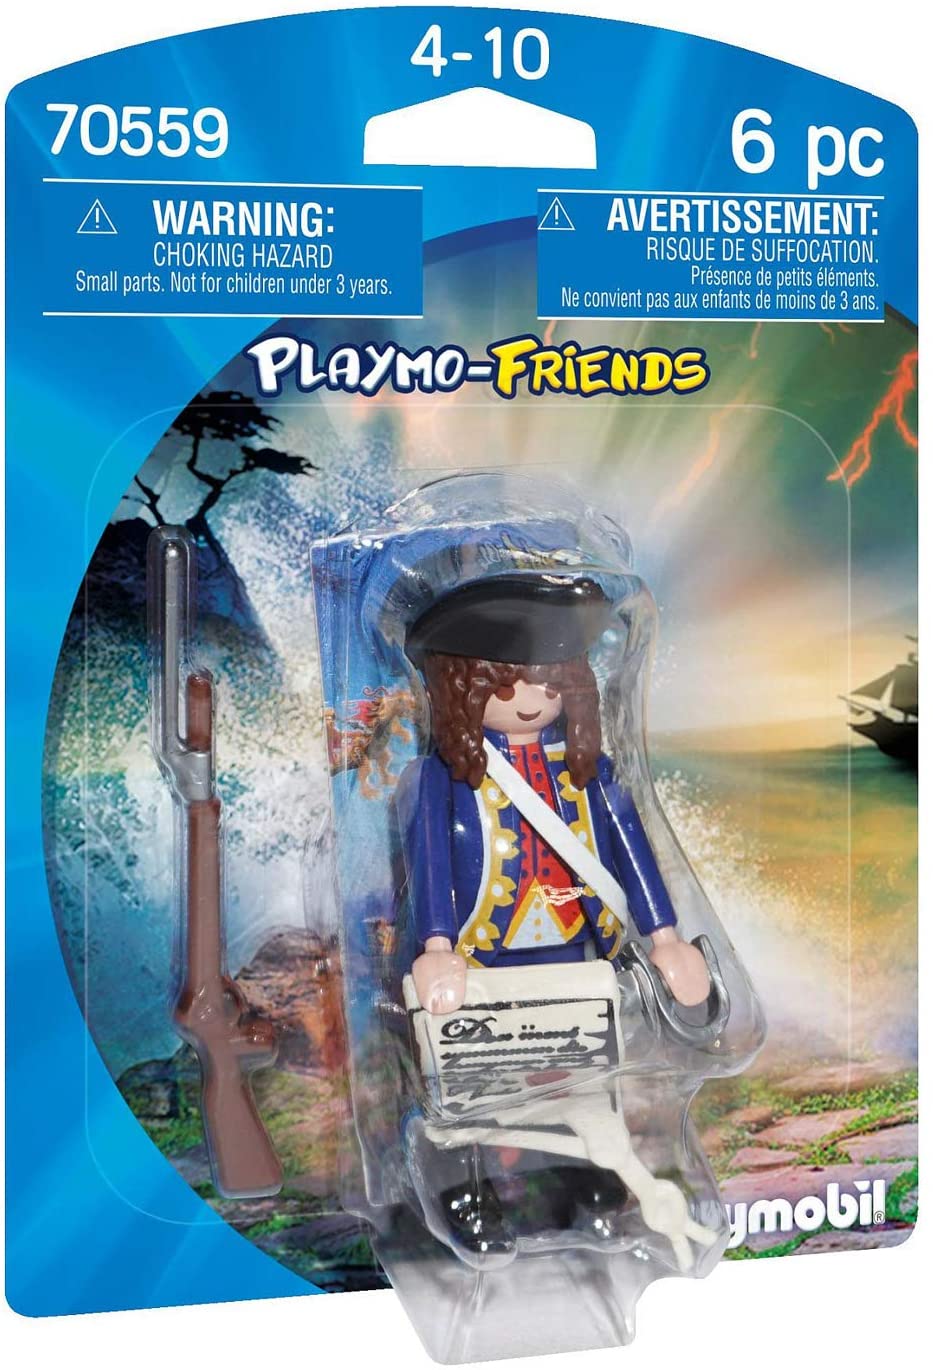 Playmobil 70559 Playmo-Friends Soldato reale, per bambini dai 4 anni in su